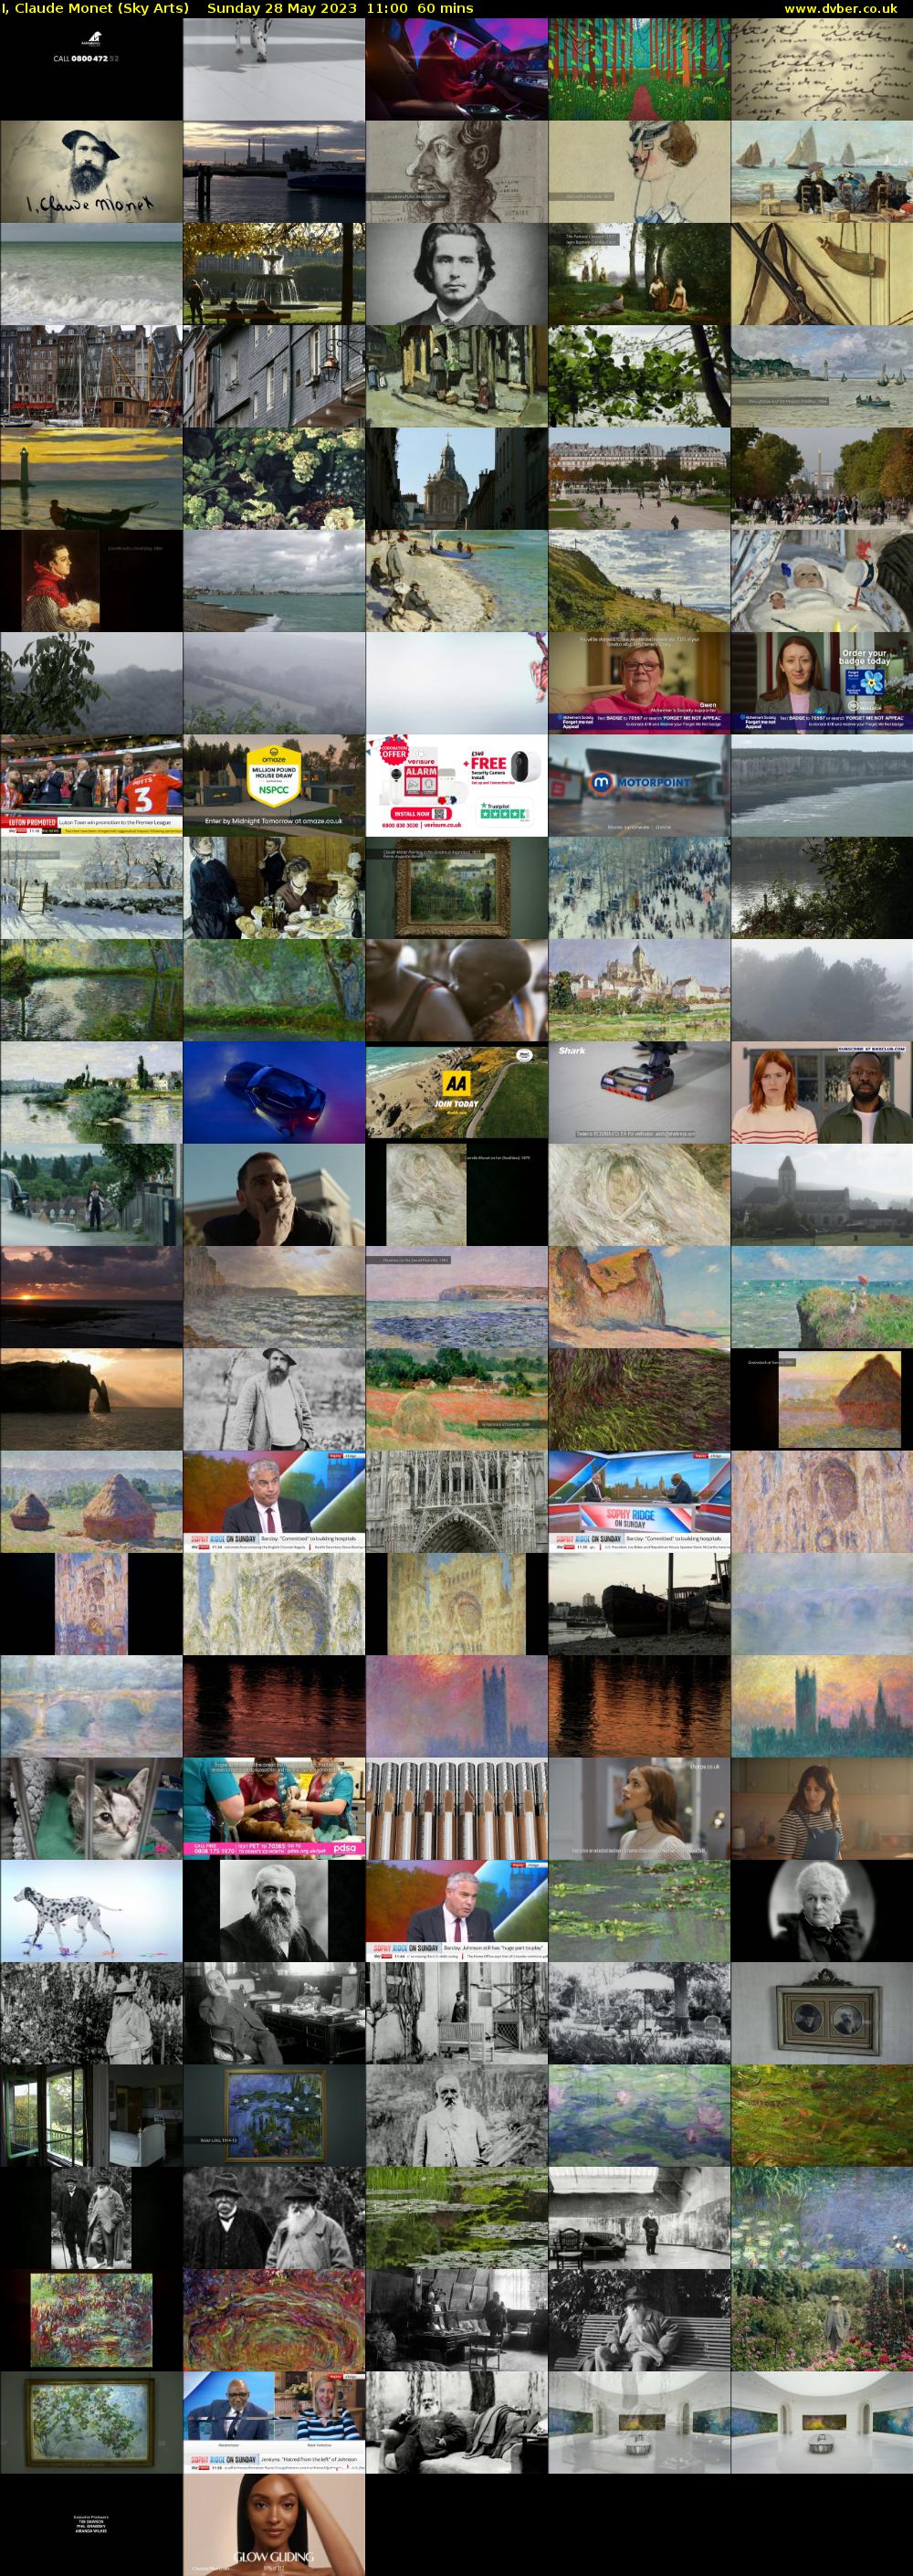 I, Claude Monet (Sky Arts) Sunday 28 May 2023 11:00 - 12:00